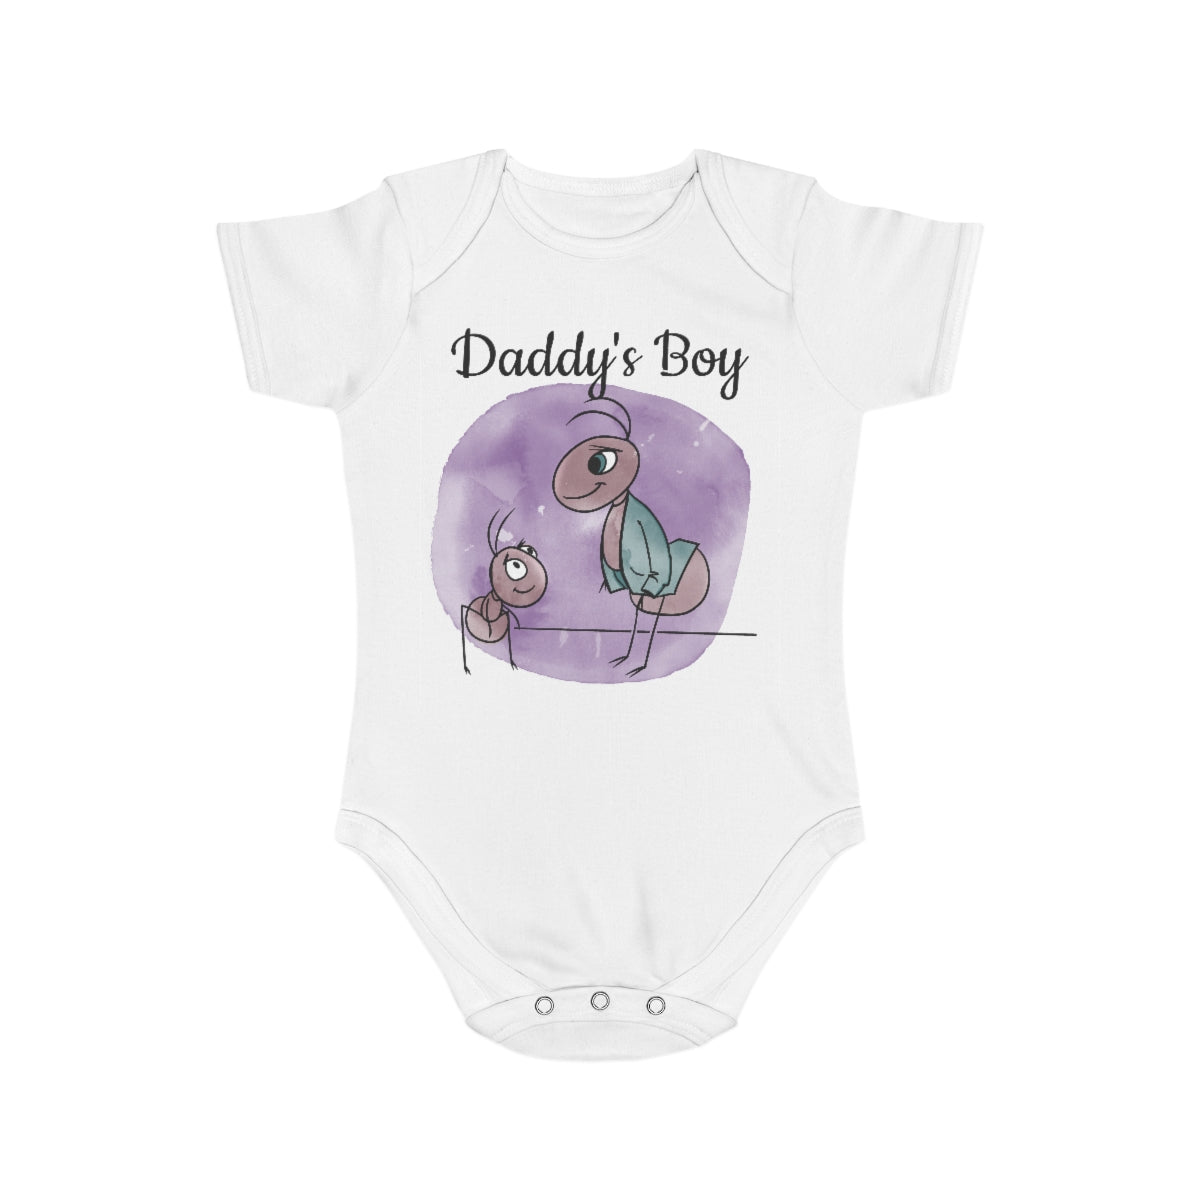 Daddy's Boy - Short Sleeve Baby Bodysuit